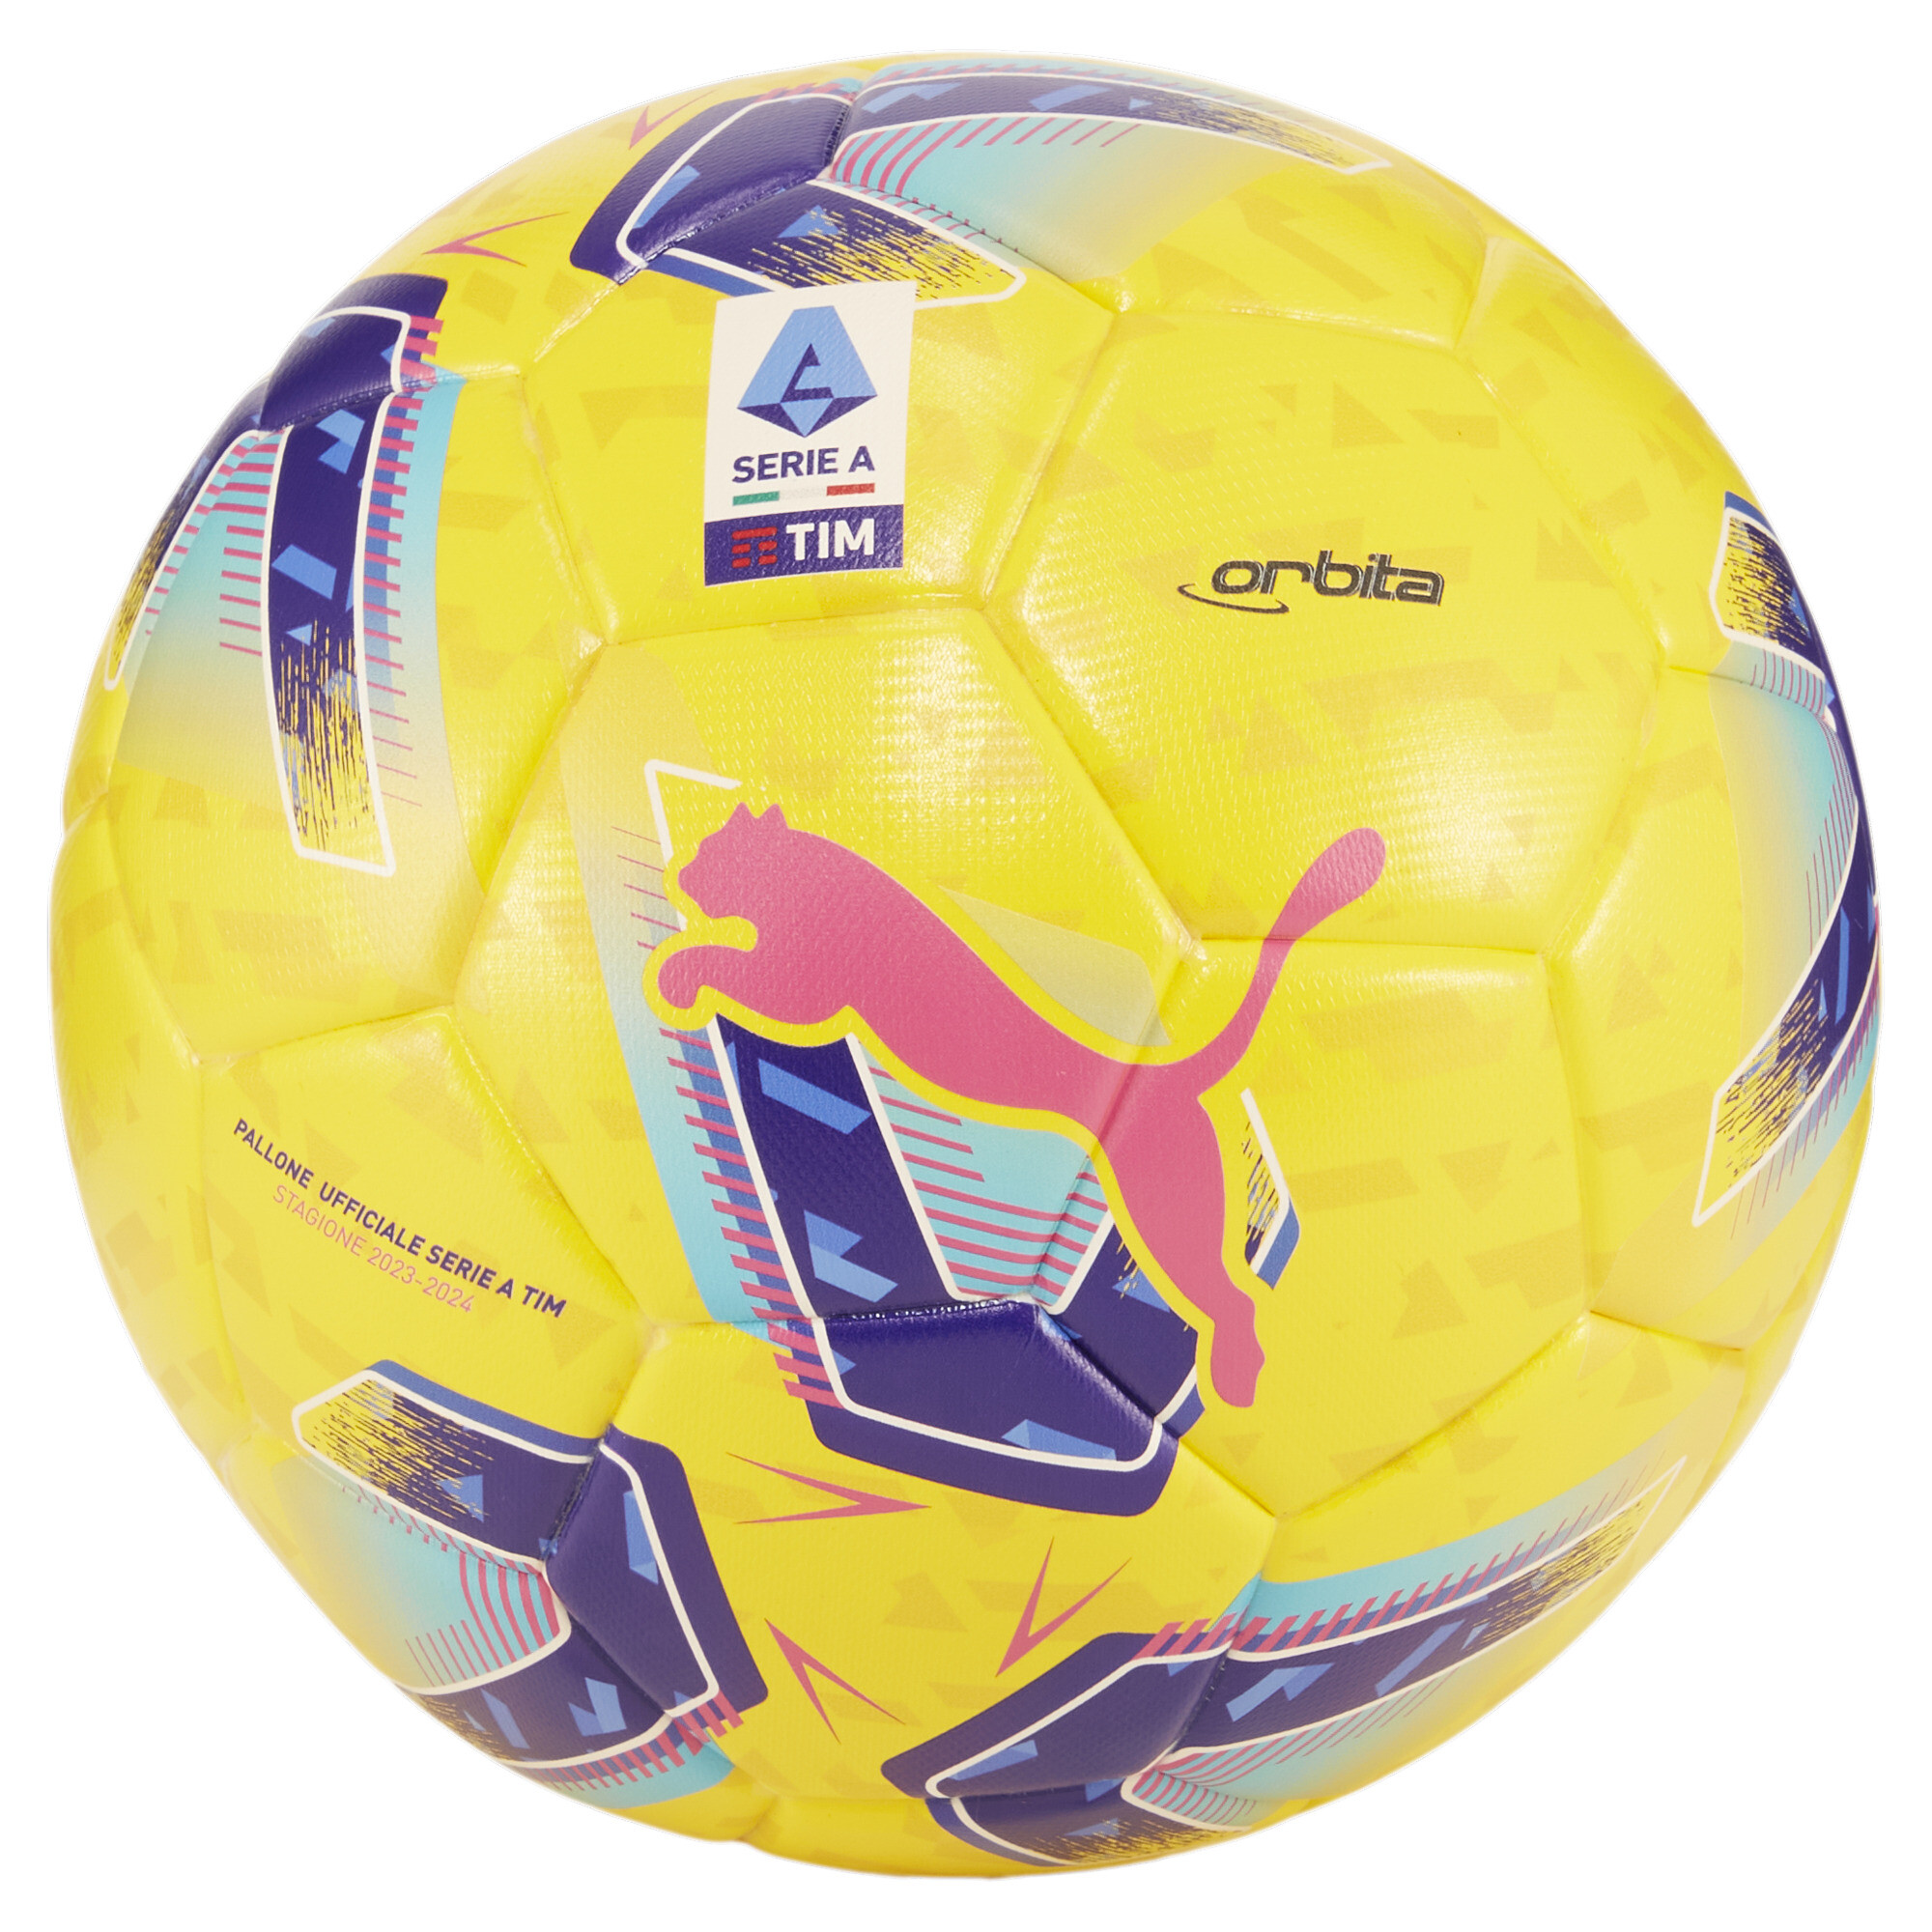 Puma Orbita Serie A Replica Football, Yellow, Size 5, Accessories